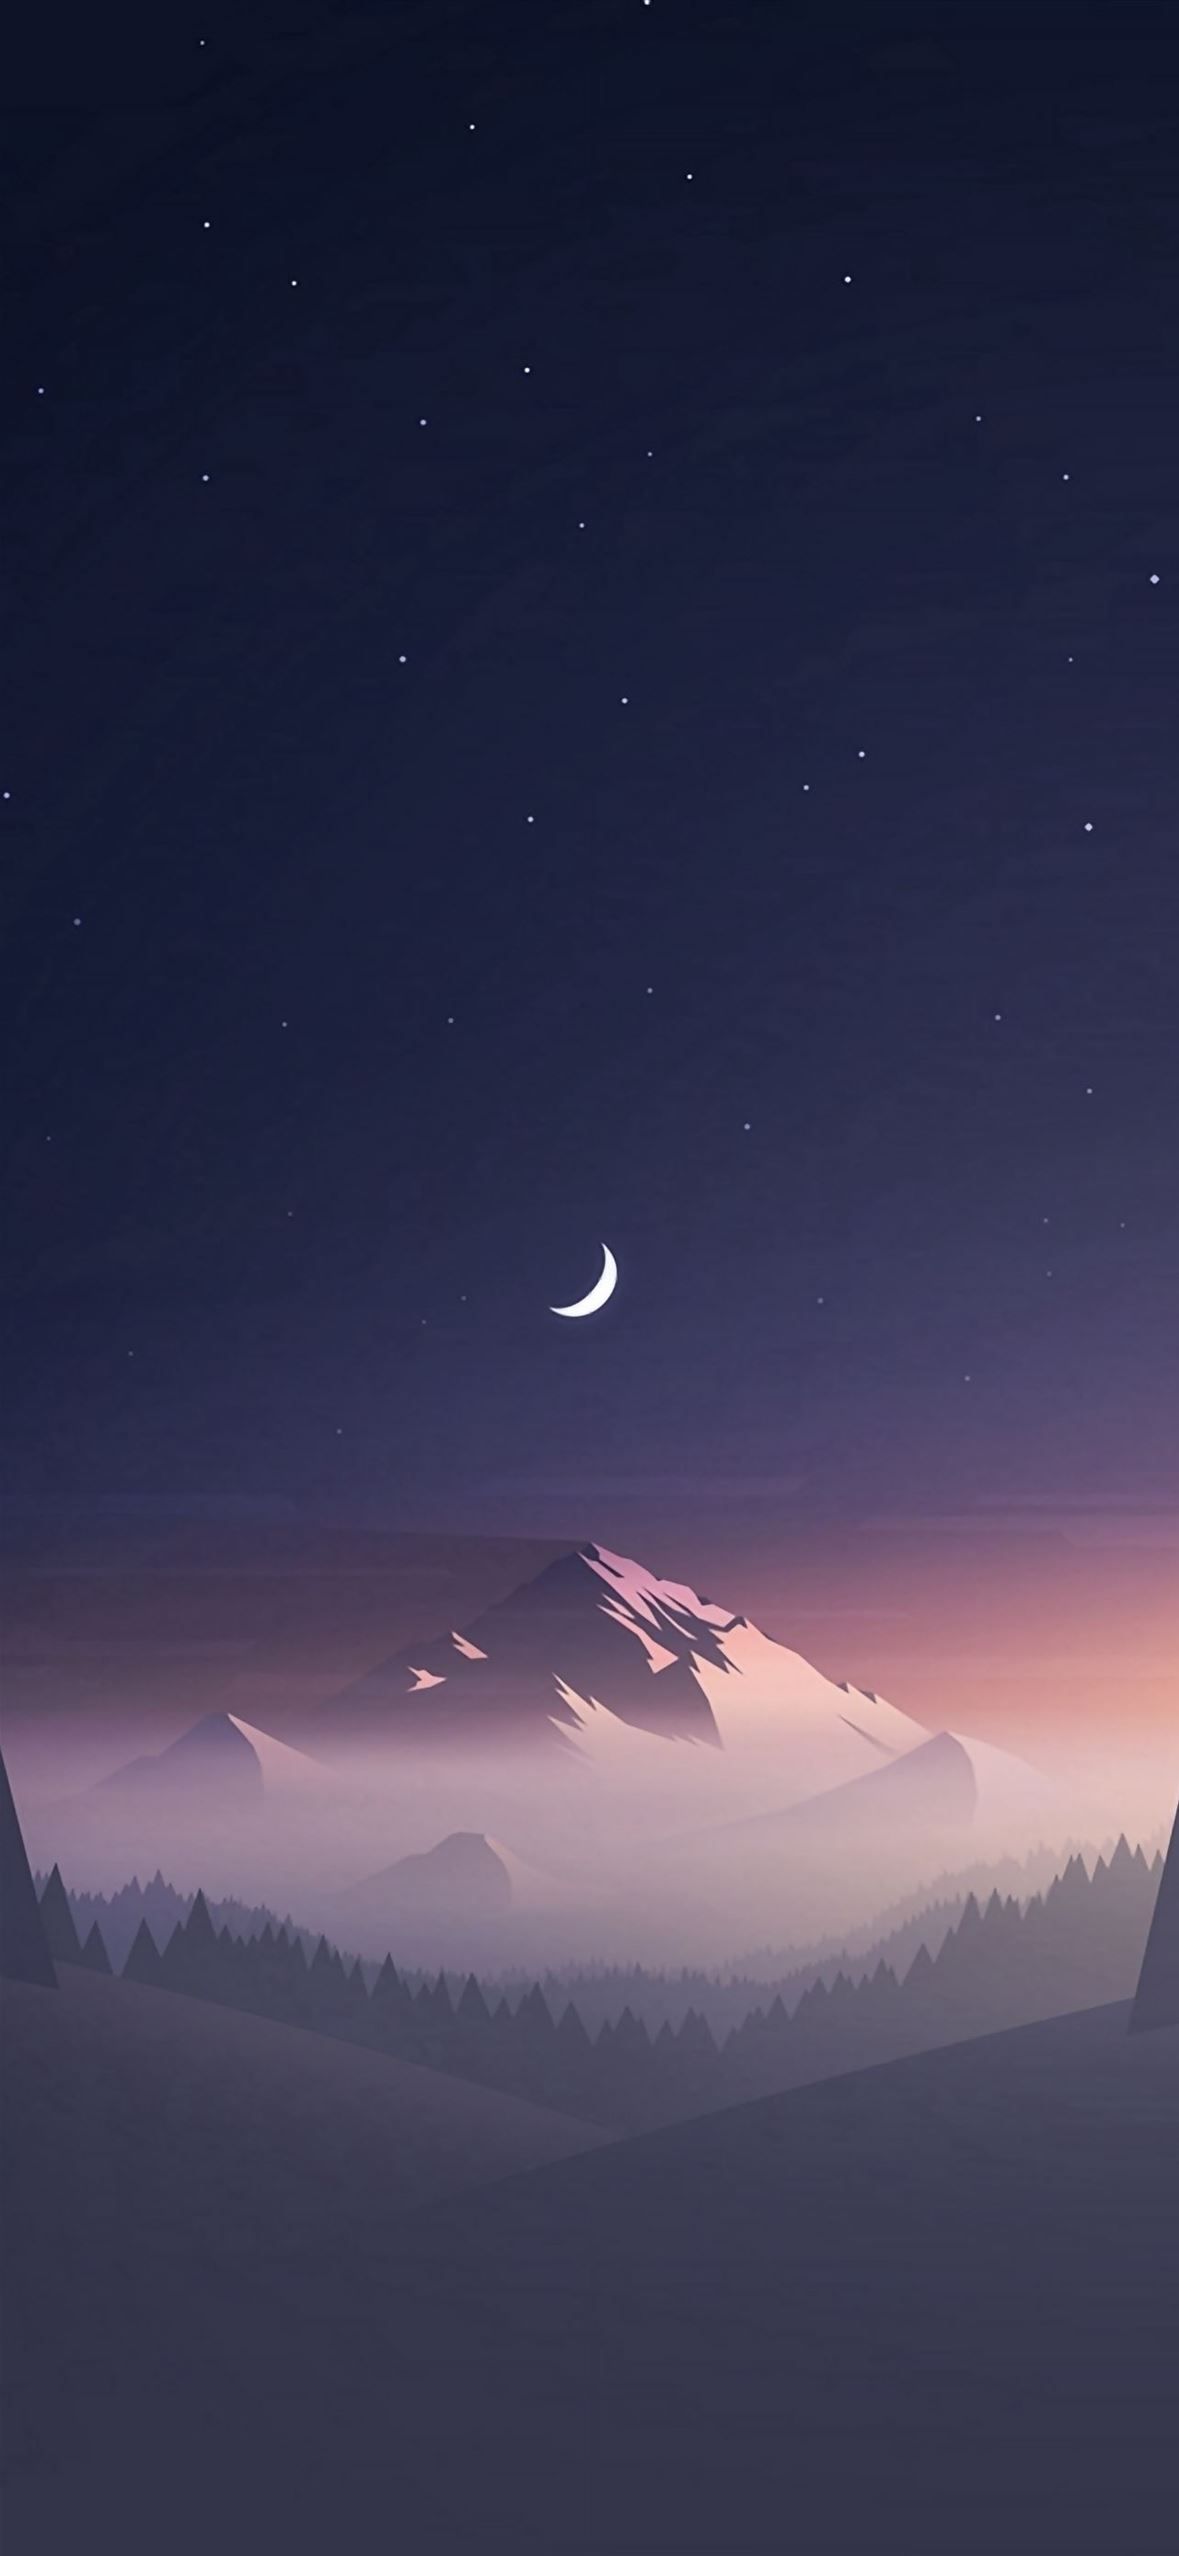 1440x2560 wallpaper of the week: night sky - Landscape, mountain